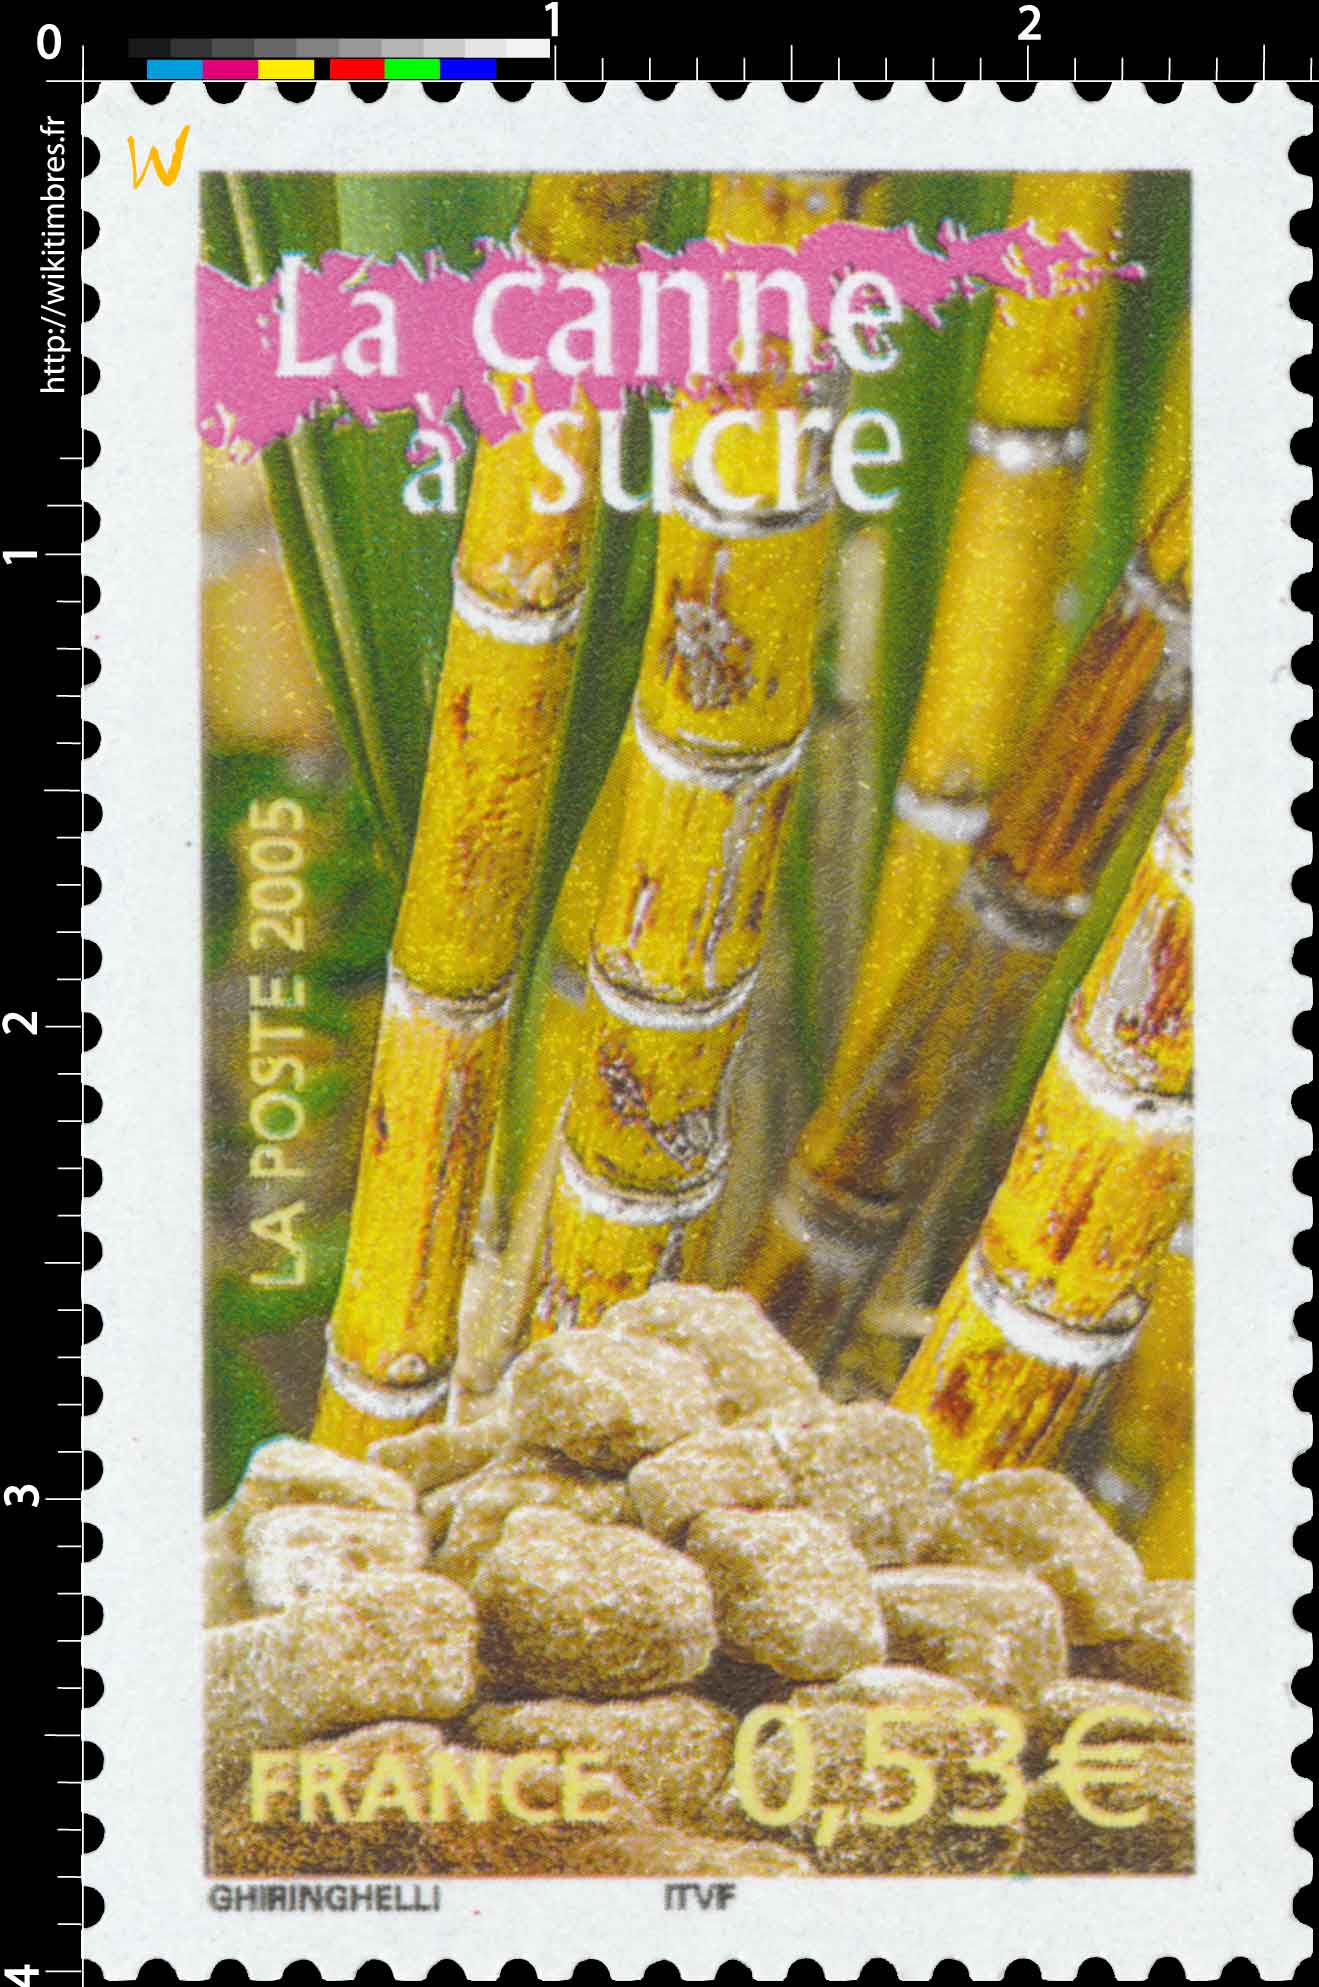 2005 La canne à sucre